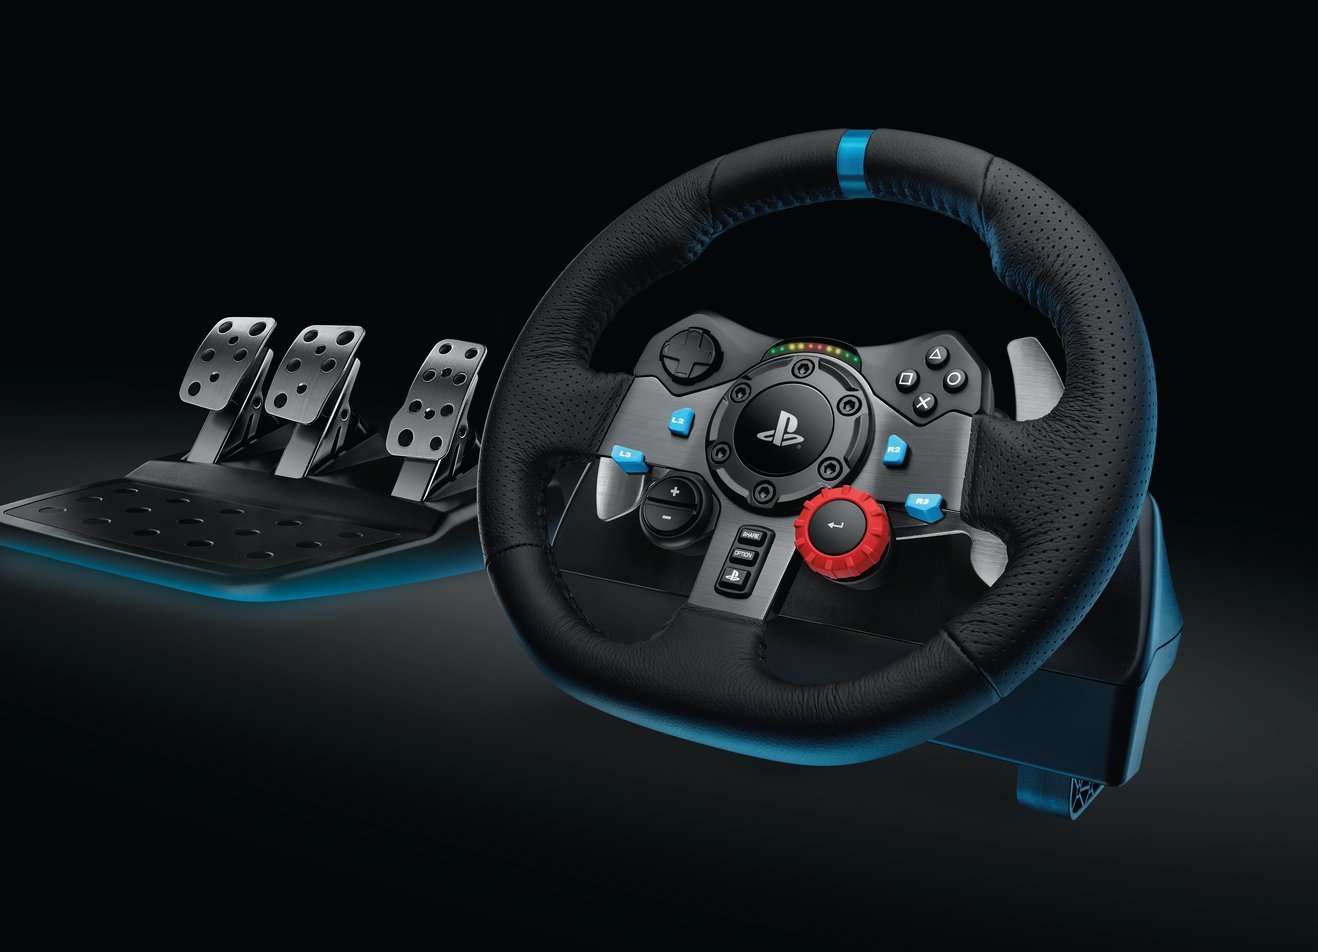 Logitech - Volante + Pedales Logitech G29 Driving Force PS5/PS4/PS3/PC